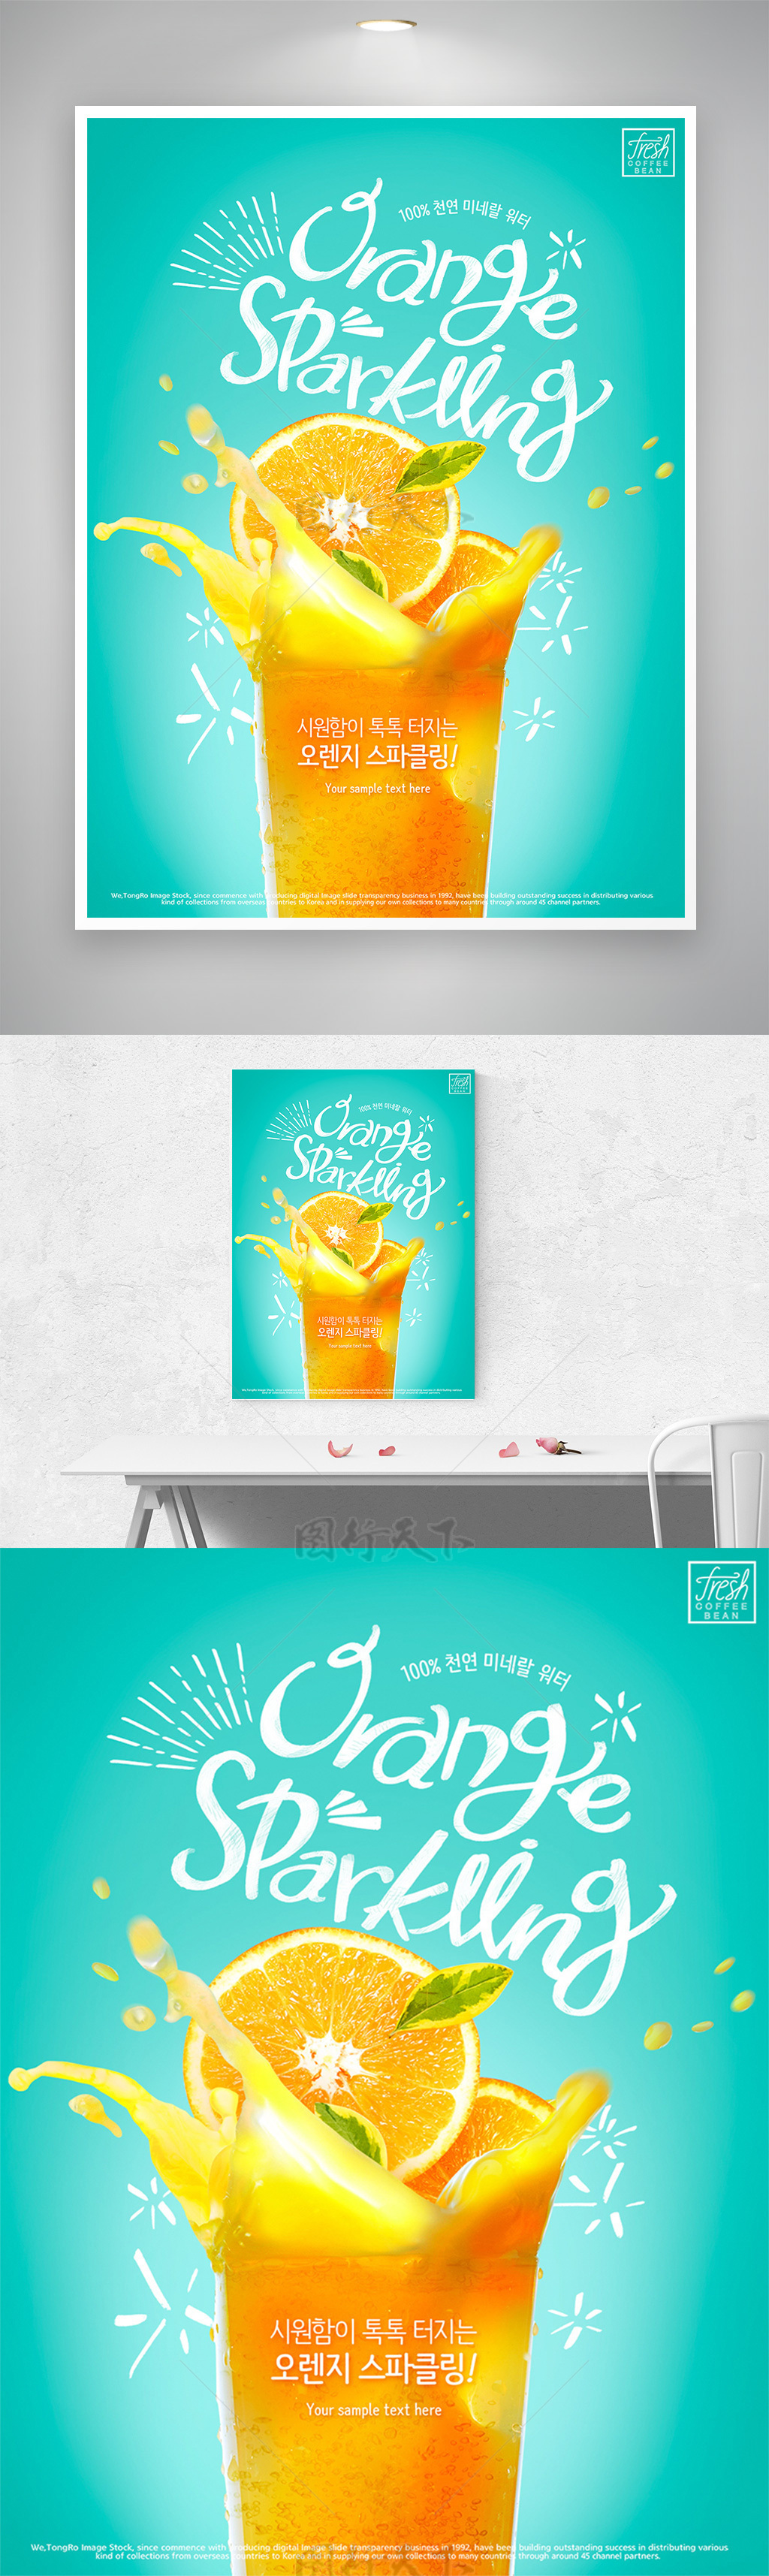 冷饮店橙汁促销宣传海报模板